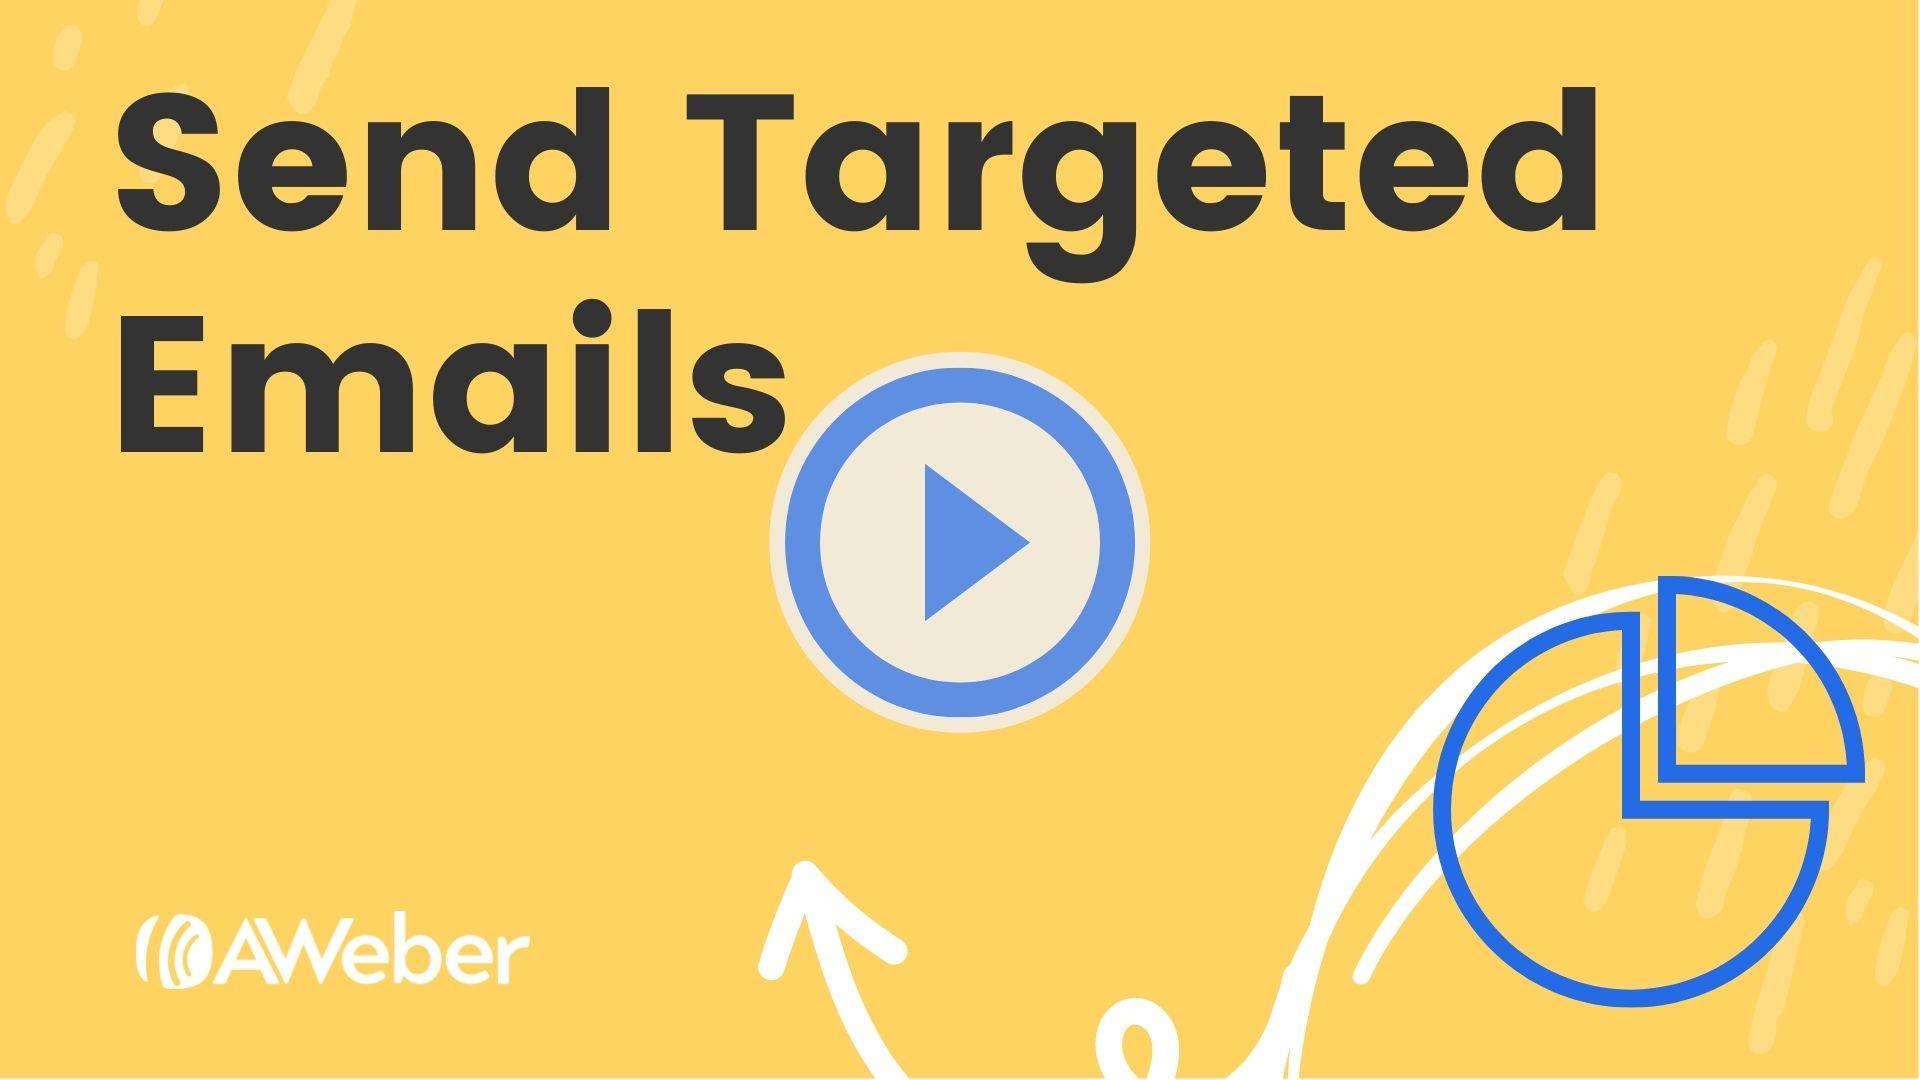 Send Targeted Emails